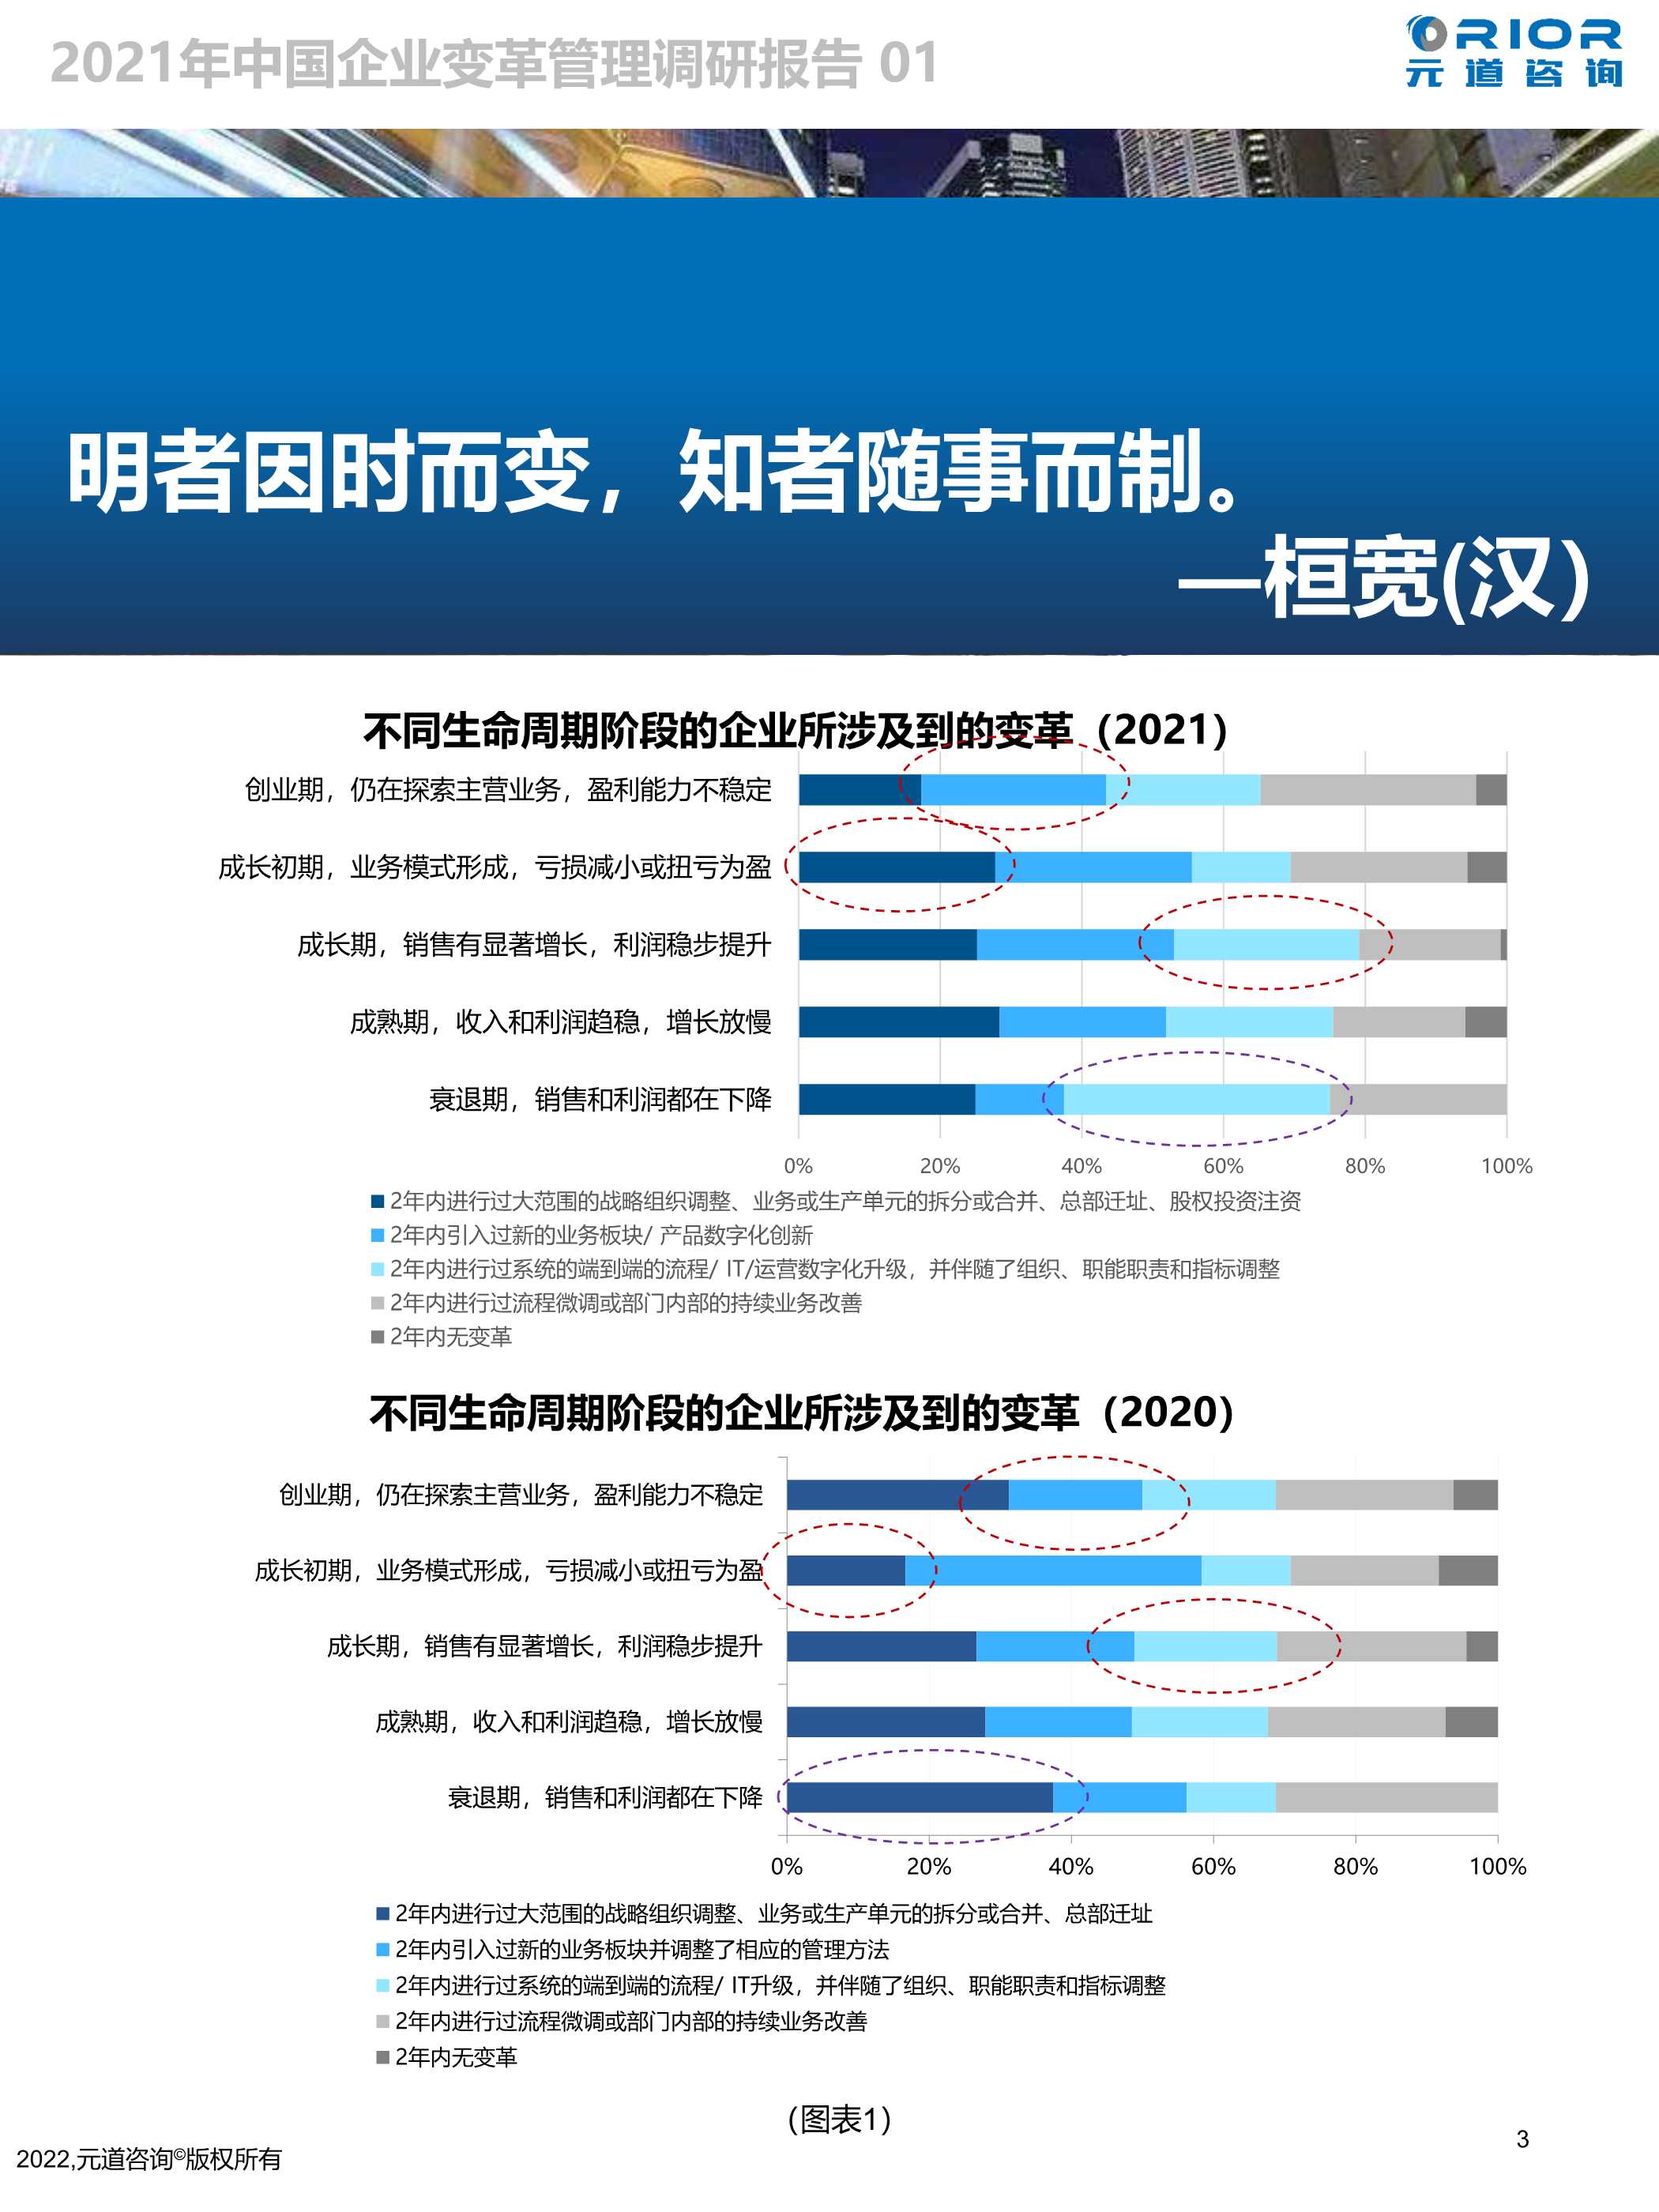 元道咨询-2021中国企业变革管理调研报告-2022.04-19页